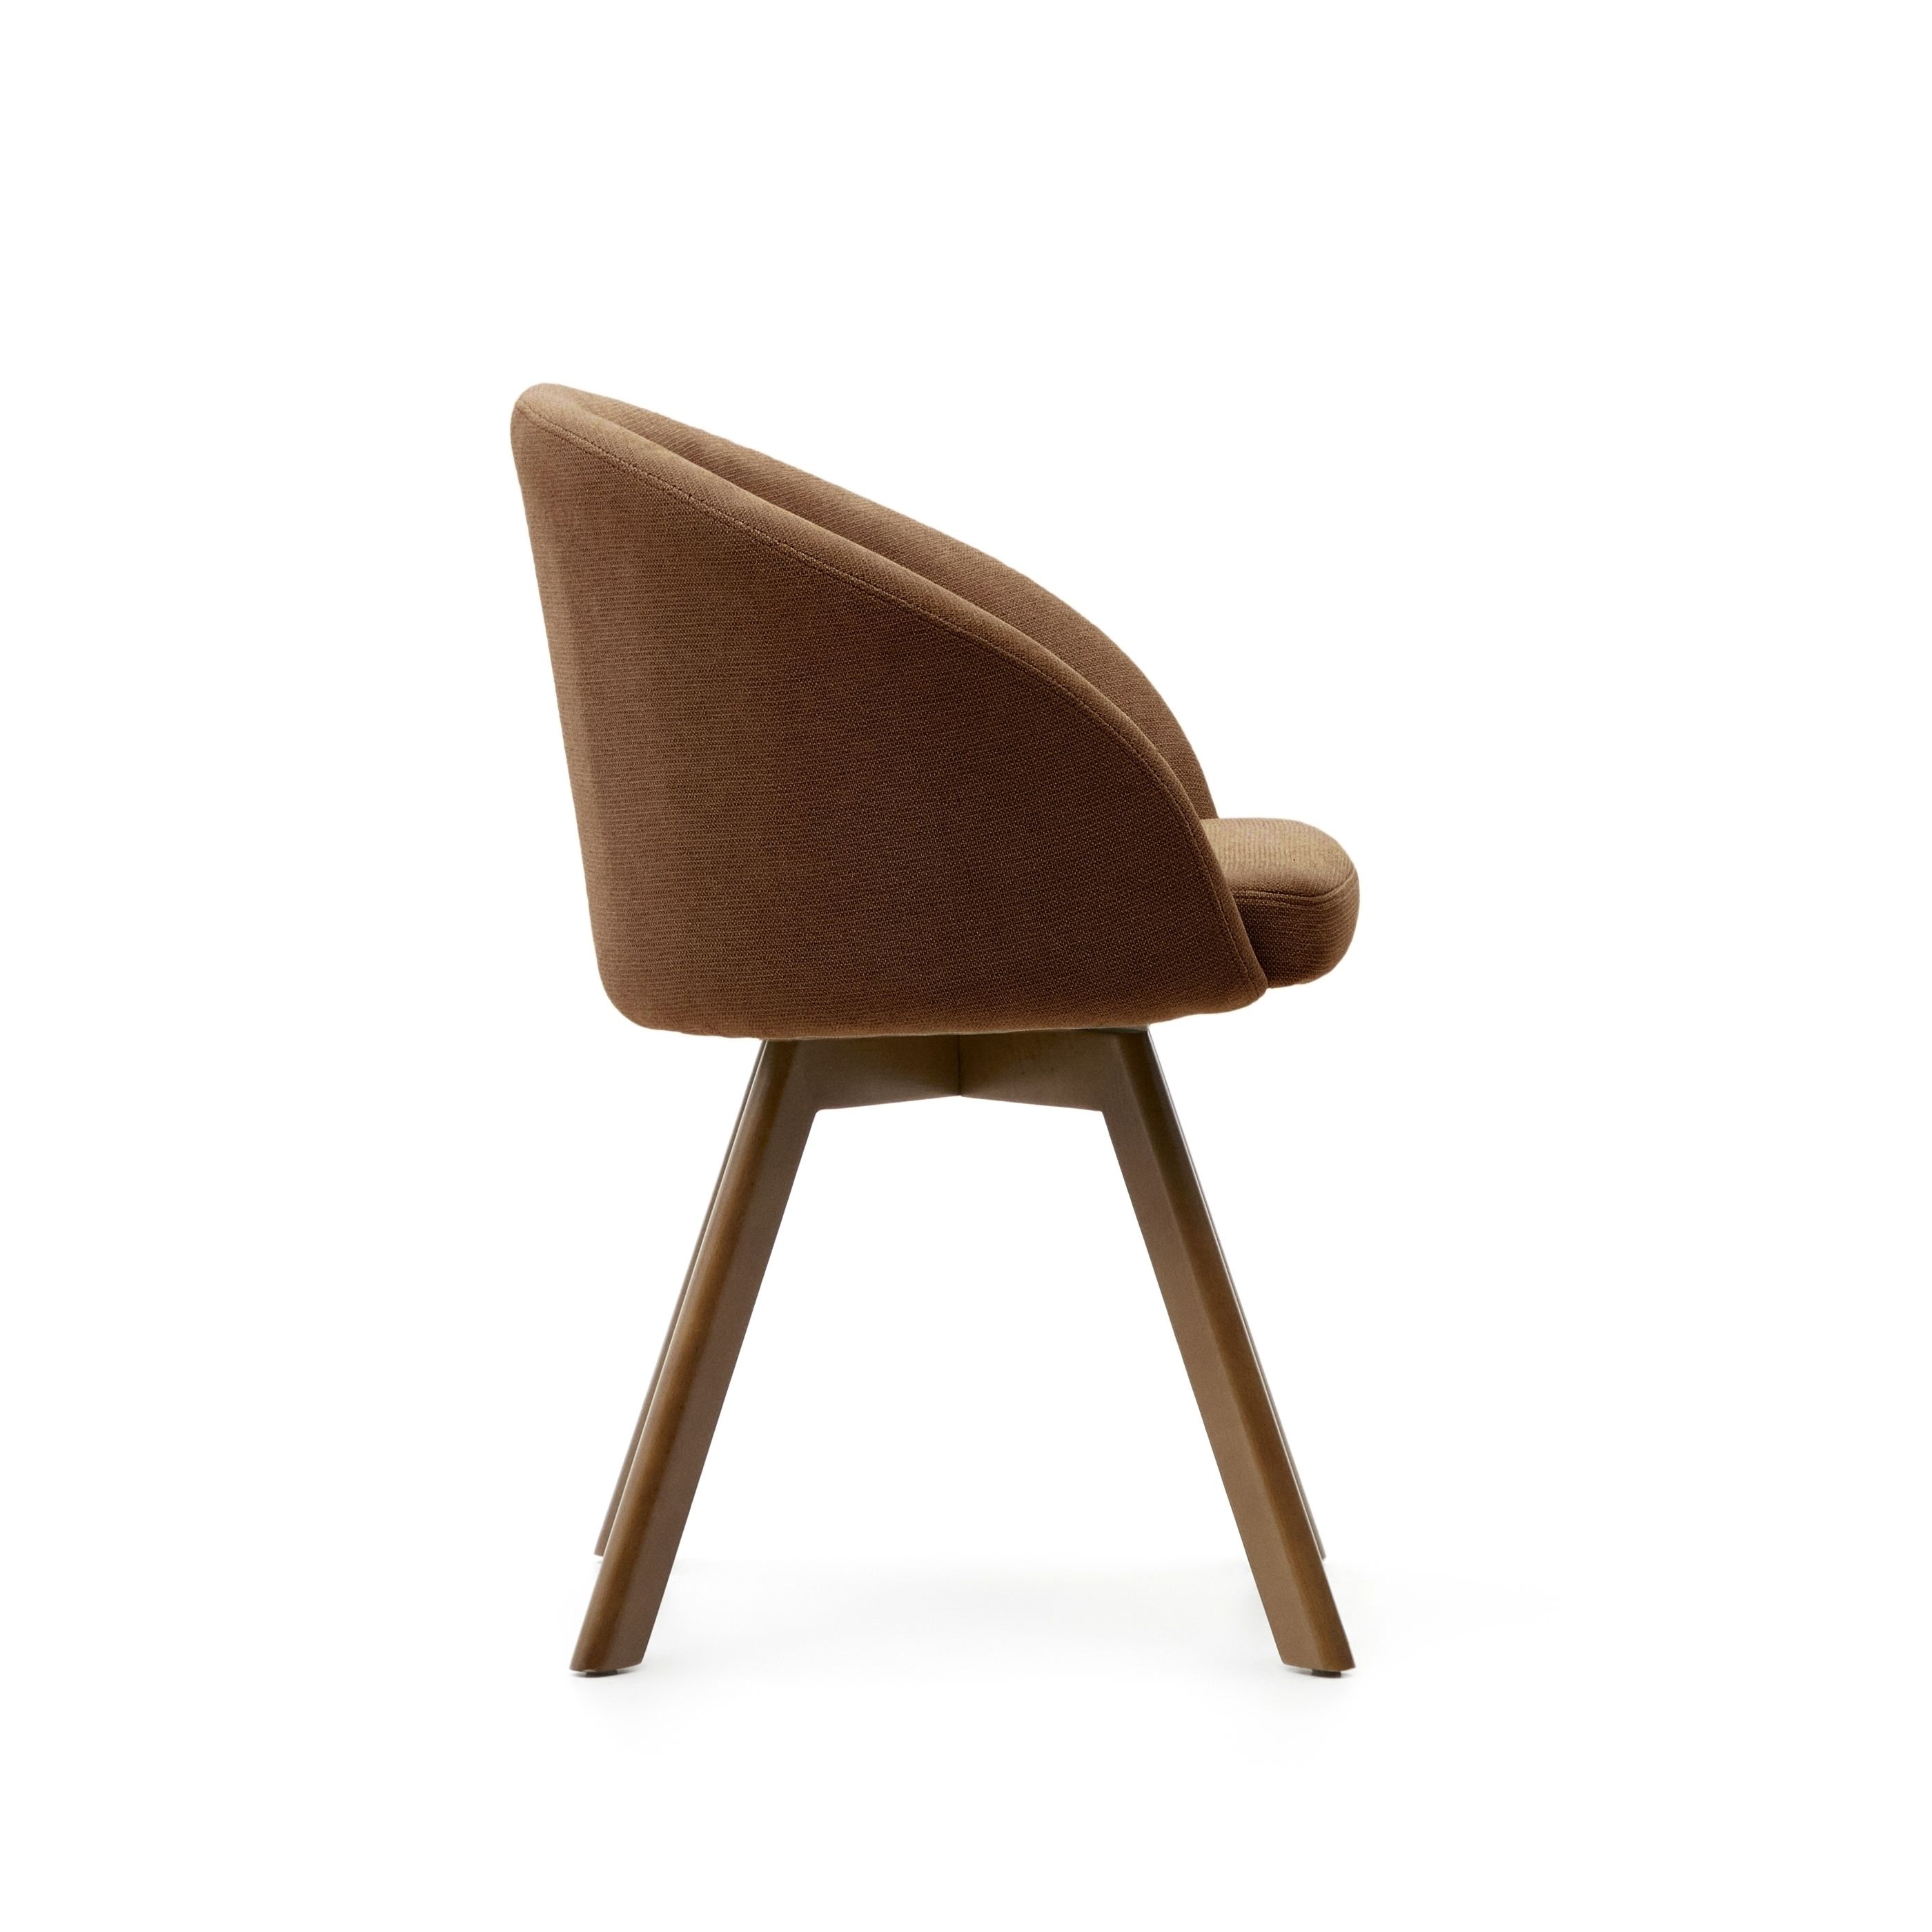 Marvin Поворотный стул из коричневой синели с ножками из ясеня Marvin